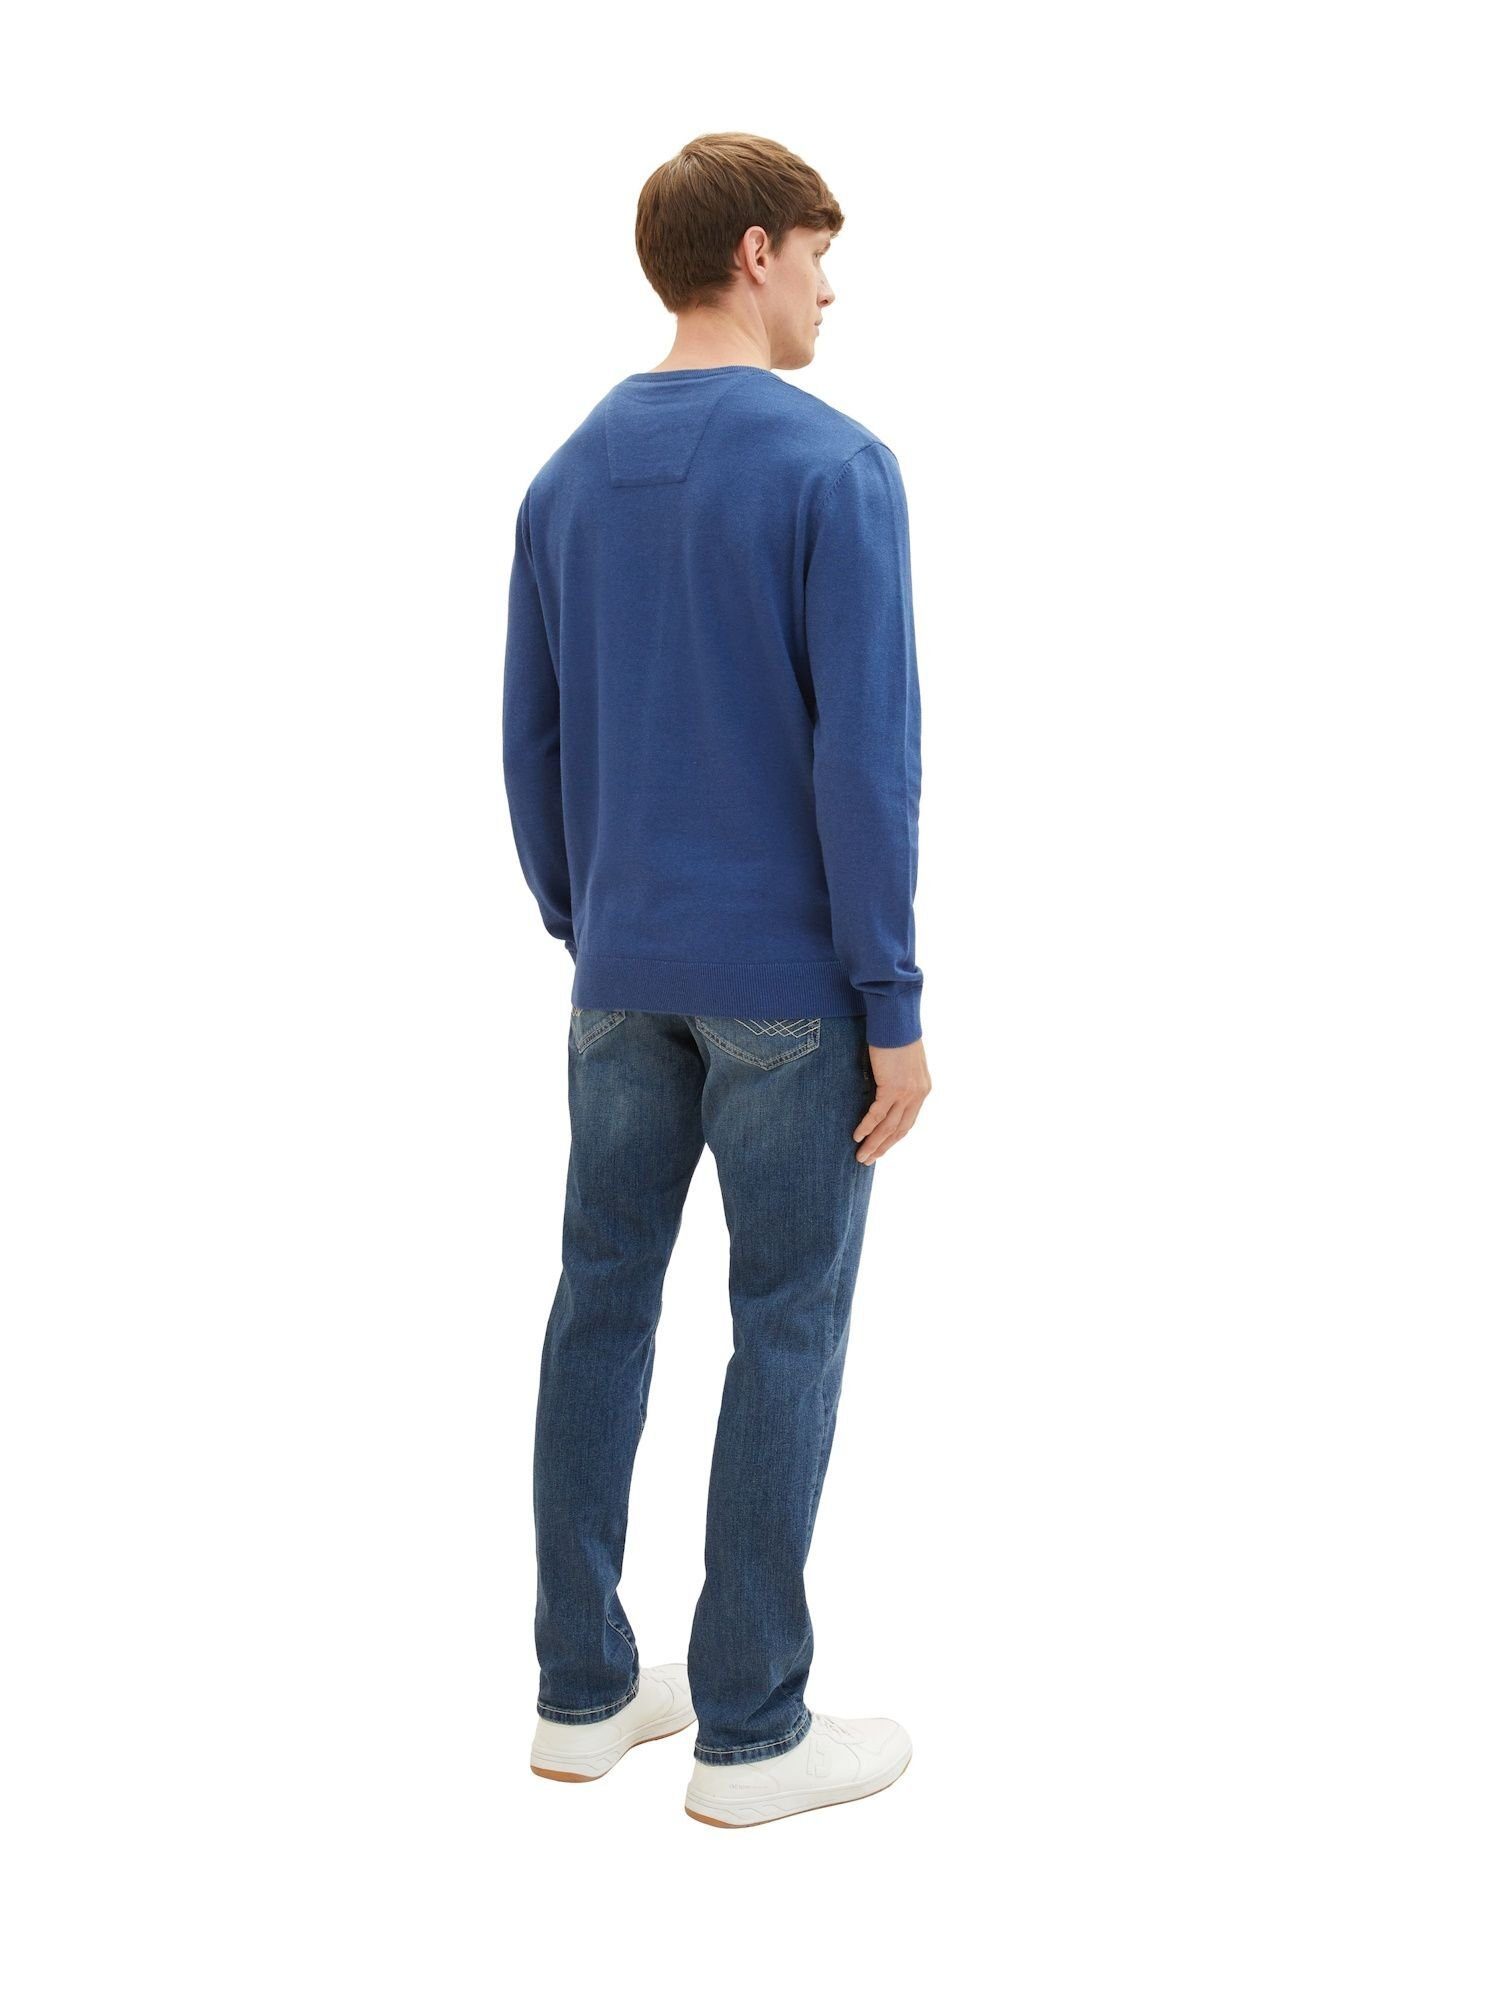 TAILOR TOM Sweatshirt Sweatshirt mit blau meliert Pullover (1-tlg) Rippbündchen